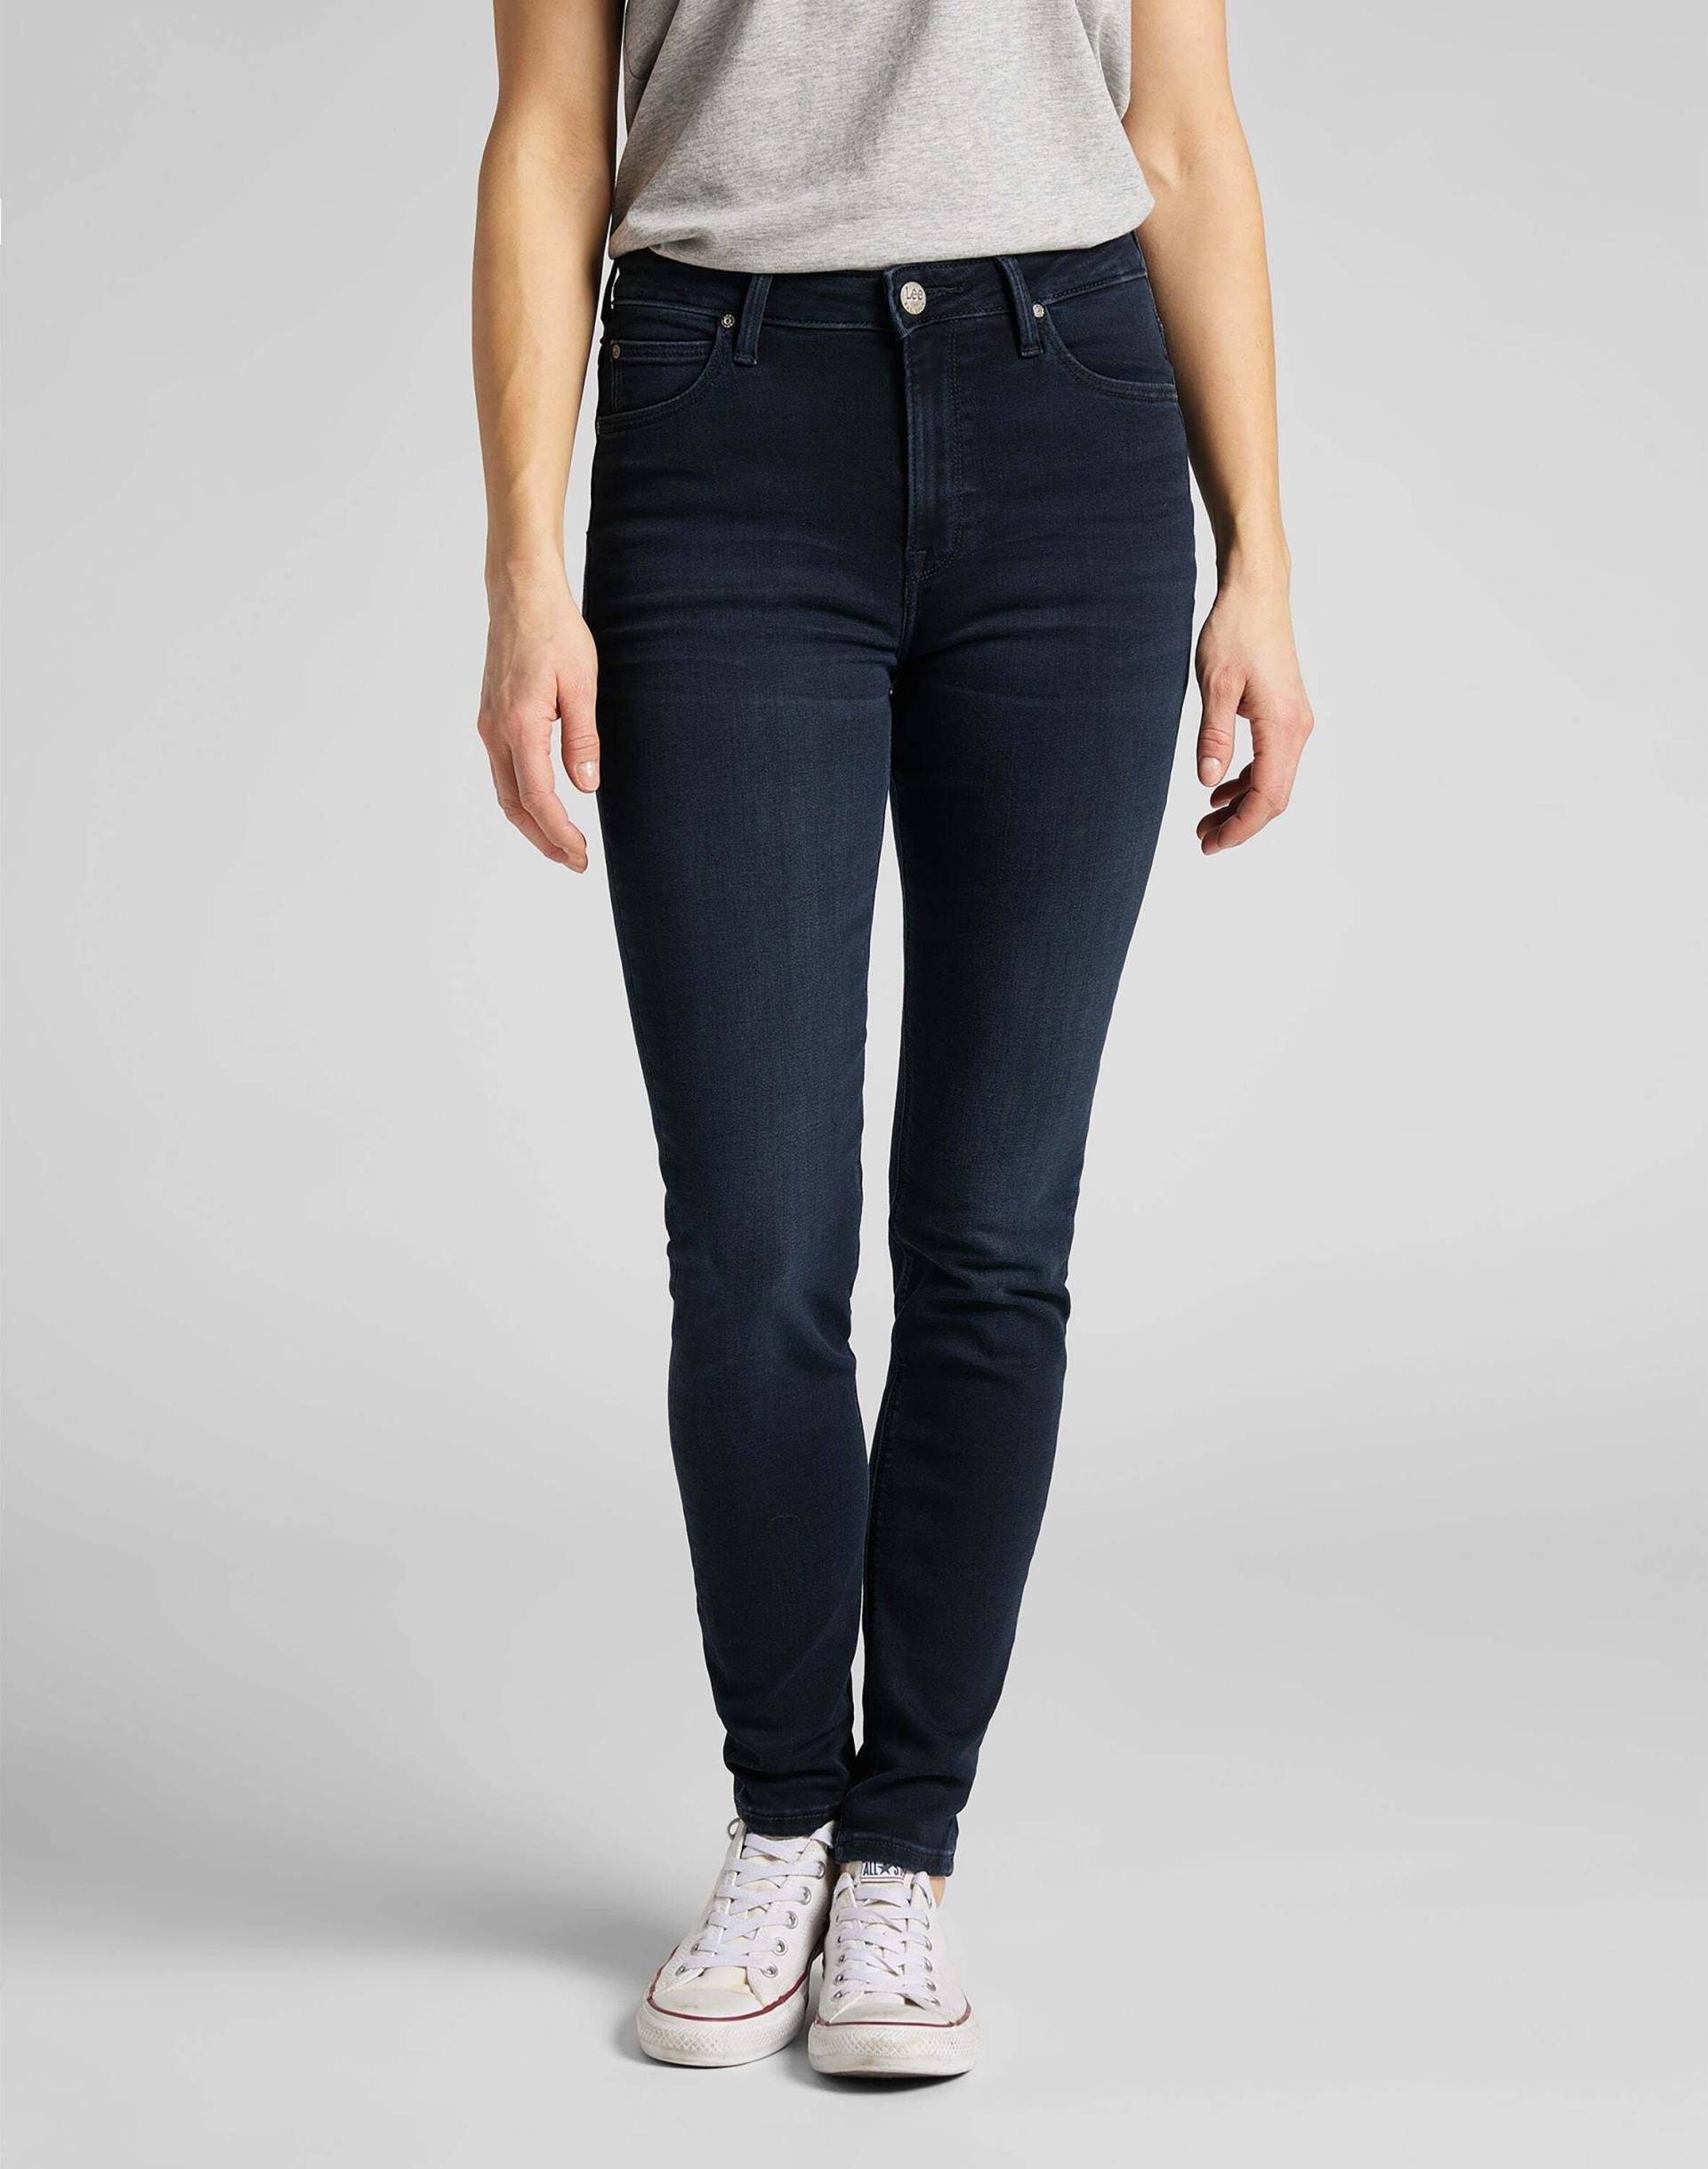 Jeans Skinny Fit Scarlett High Damen Marine L31/W24 von Lee